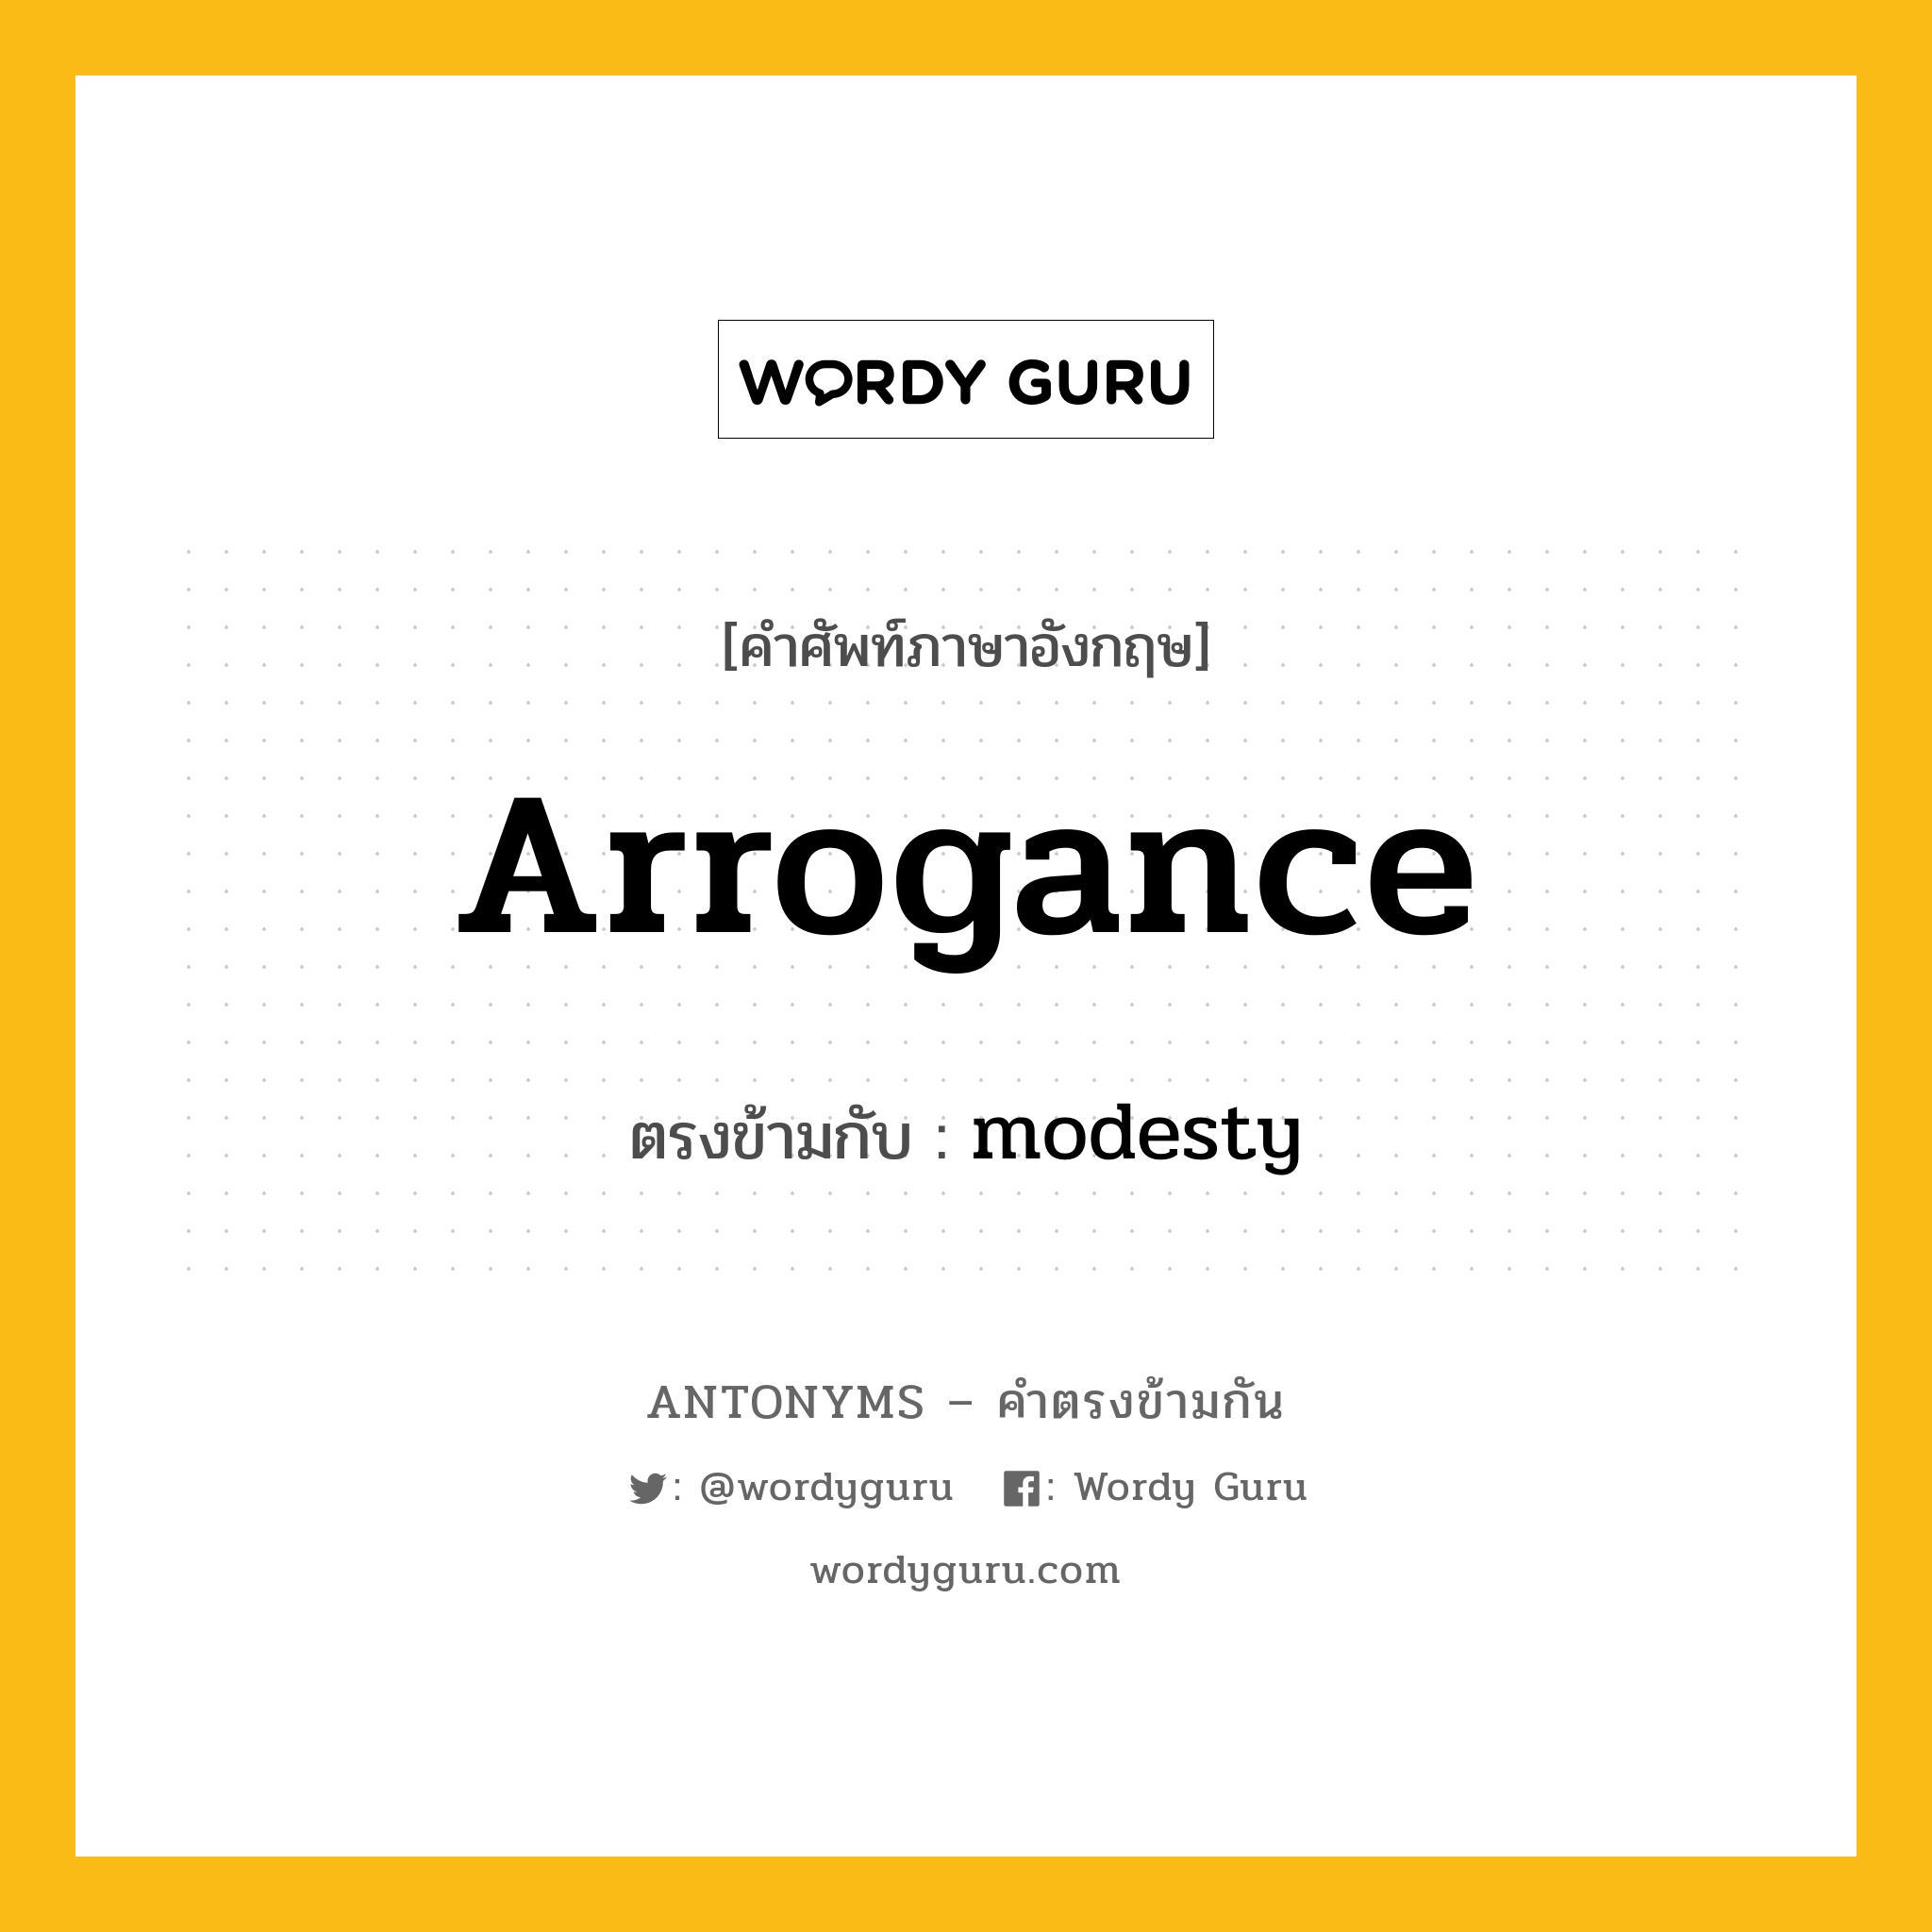 arrogance เป็นคำตรงข้ามกับคำไหนบ้าง?, คำศัพท์ภาษาอังกฤษ arrogance ตรงข้ามกับ modesty หมวด modesty